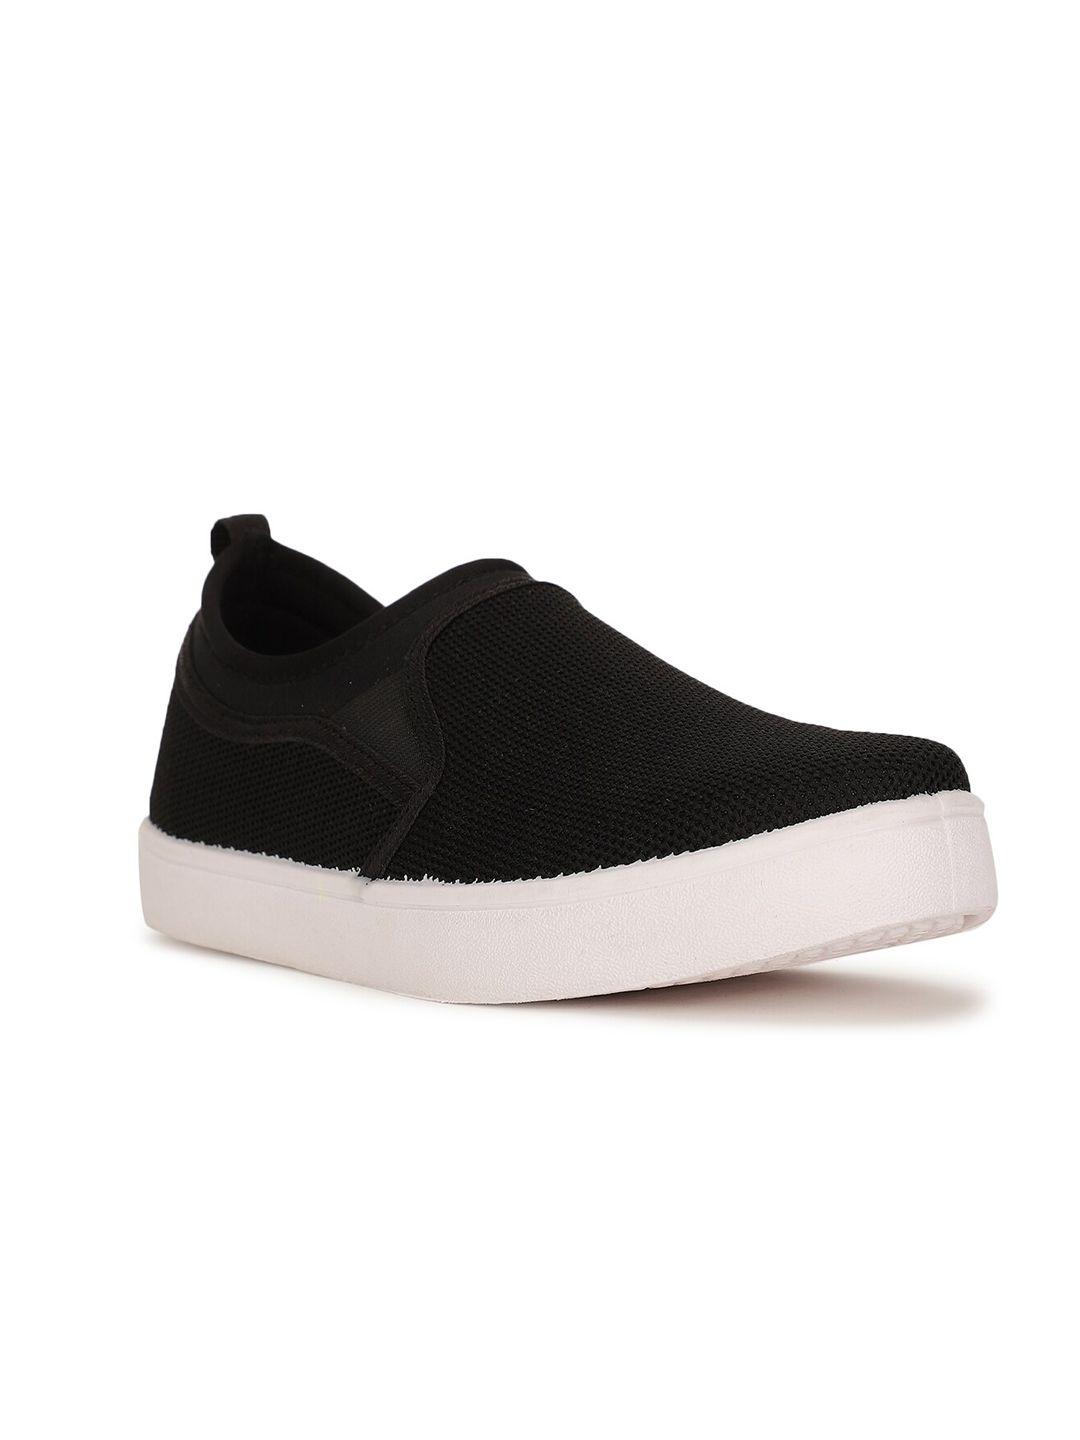 bata-boys-black-woven-design-slip-on-sneakers